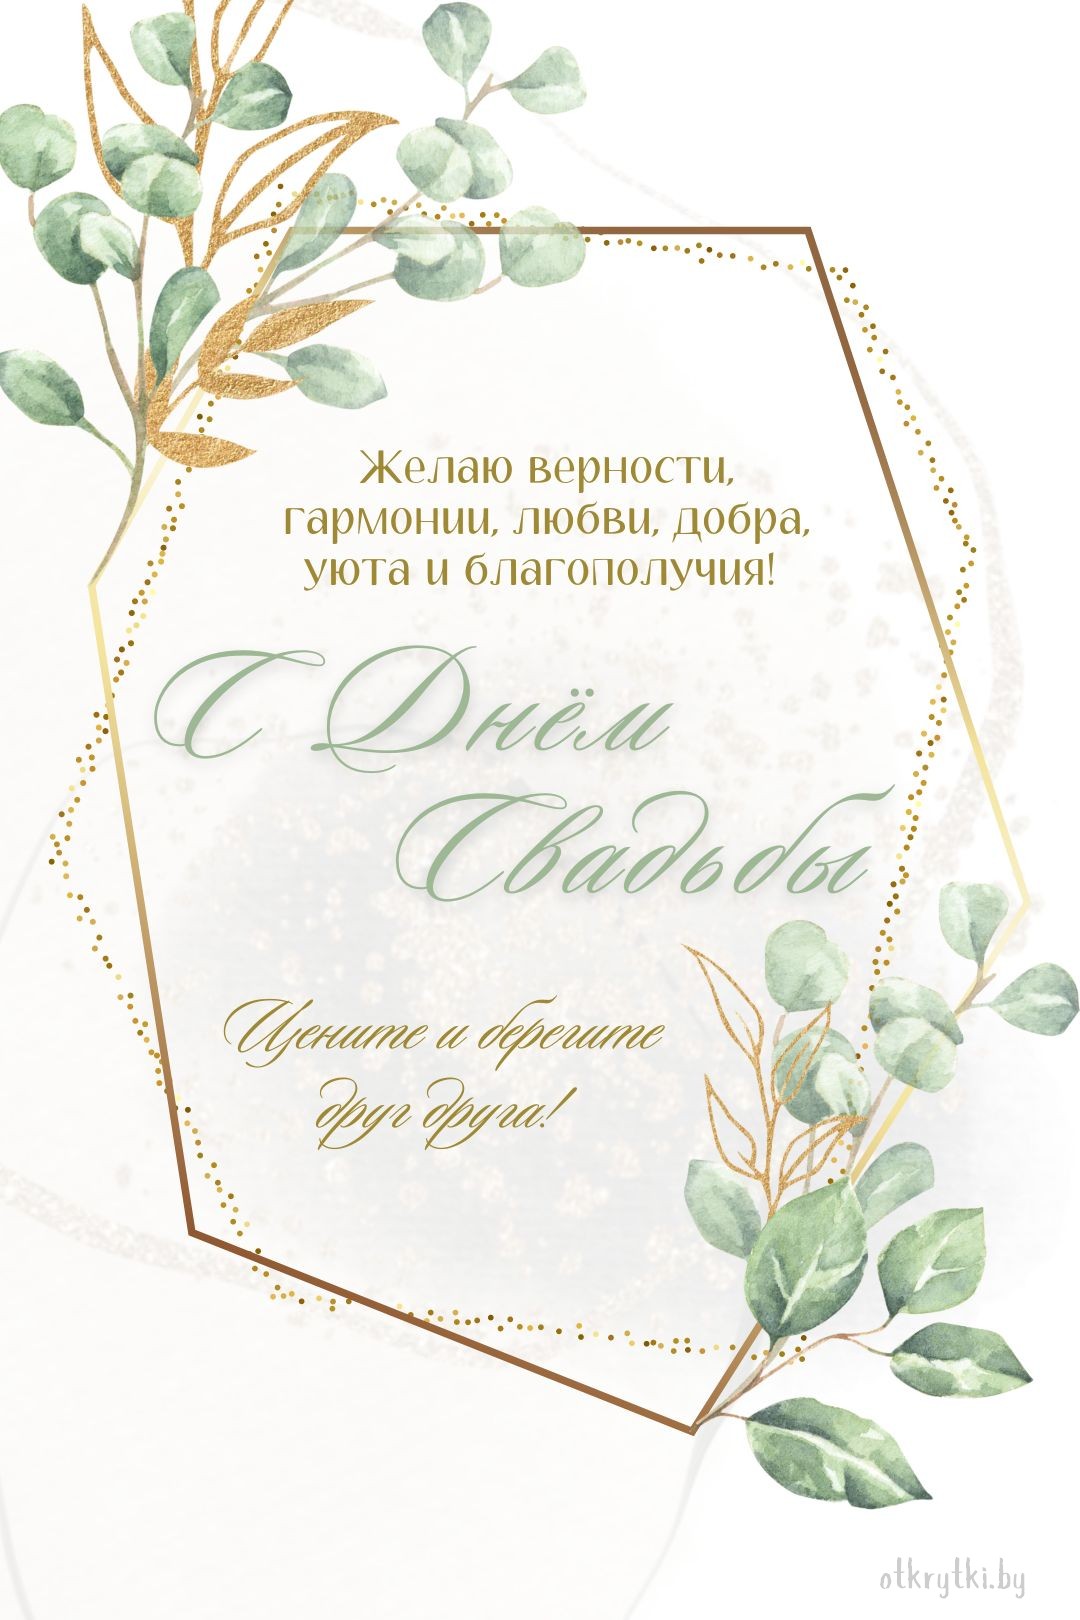 Бесплатная поздравительная свадебная открытка